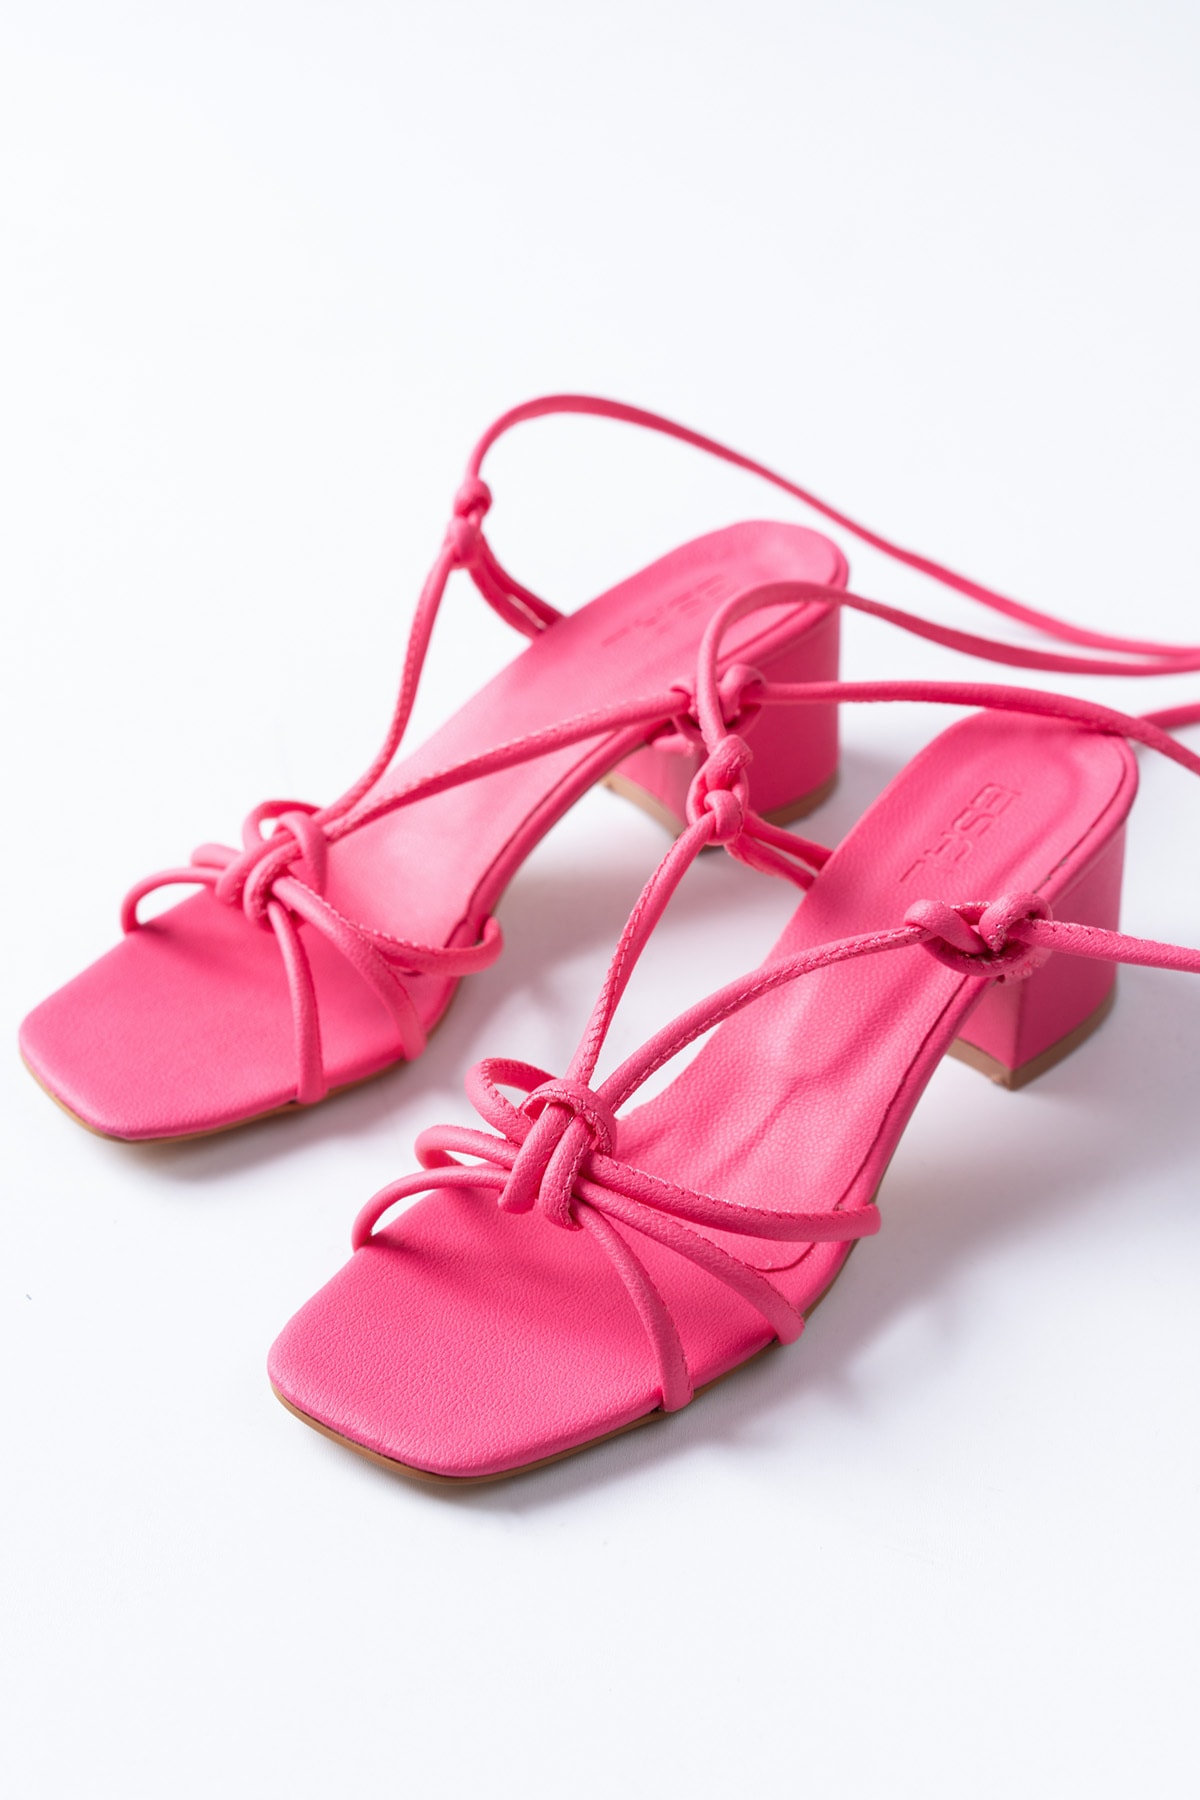 Esal Store Kadın Günlük Bilekten Bağlamalı Topuklu Sandalet Fuşya